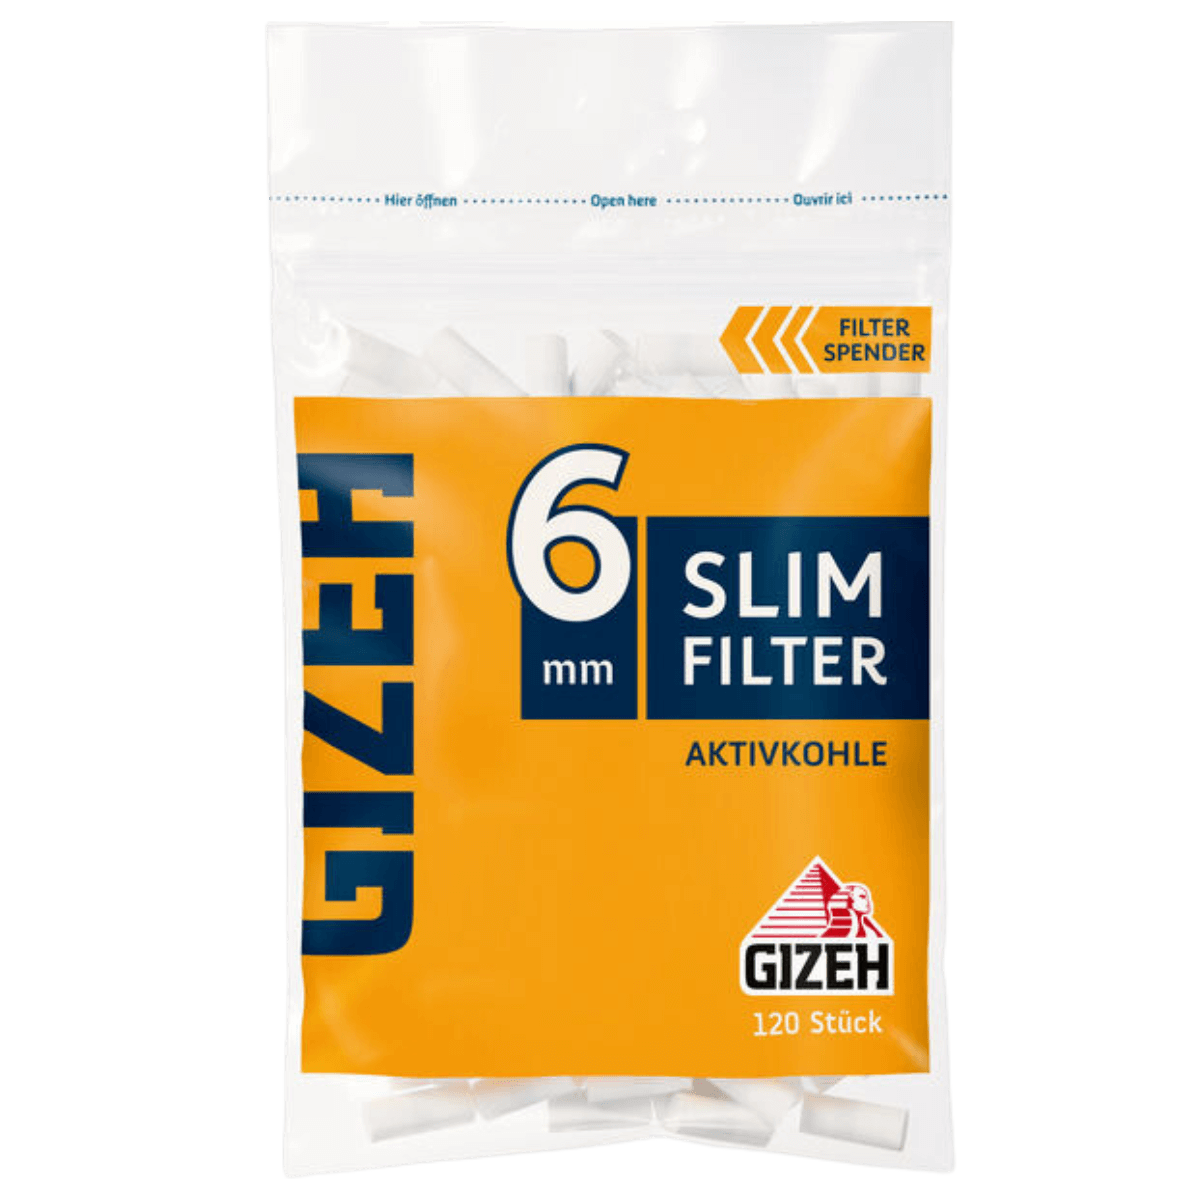 GIZEH Slim Filter Aktivkohle 6mm 120 Stück für 1,60 €